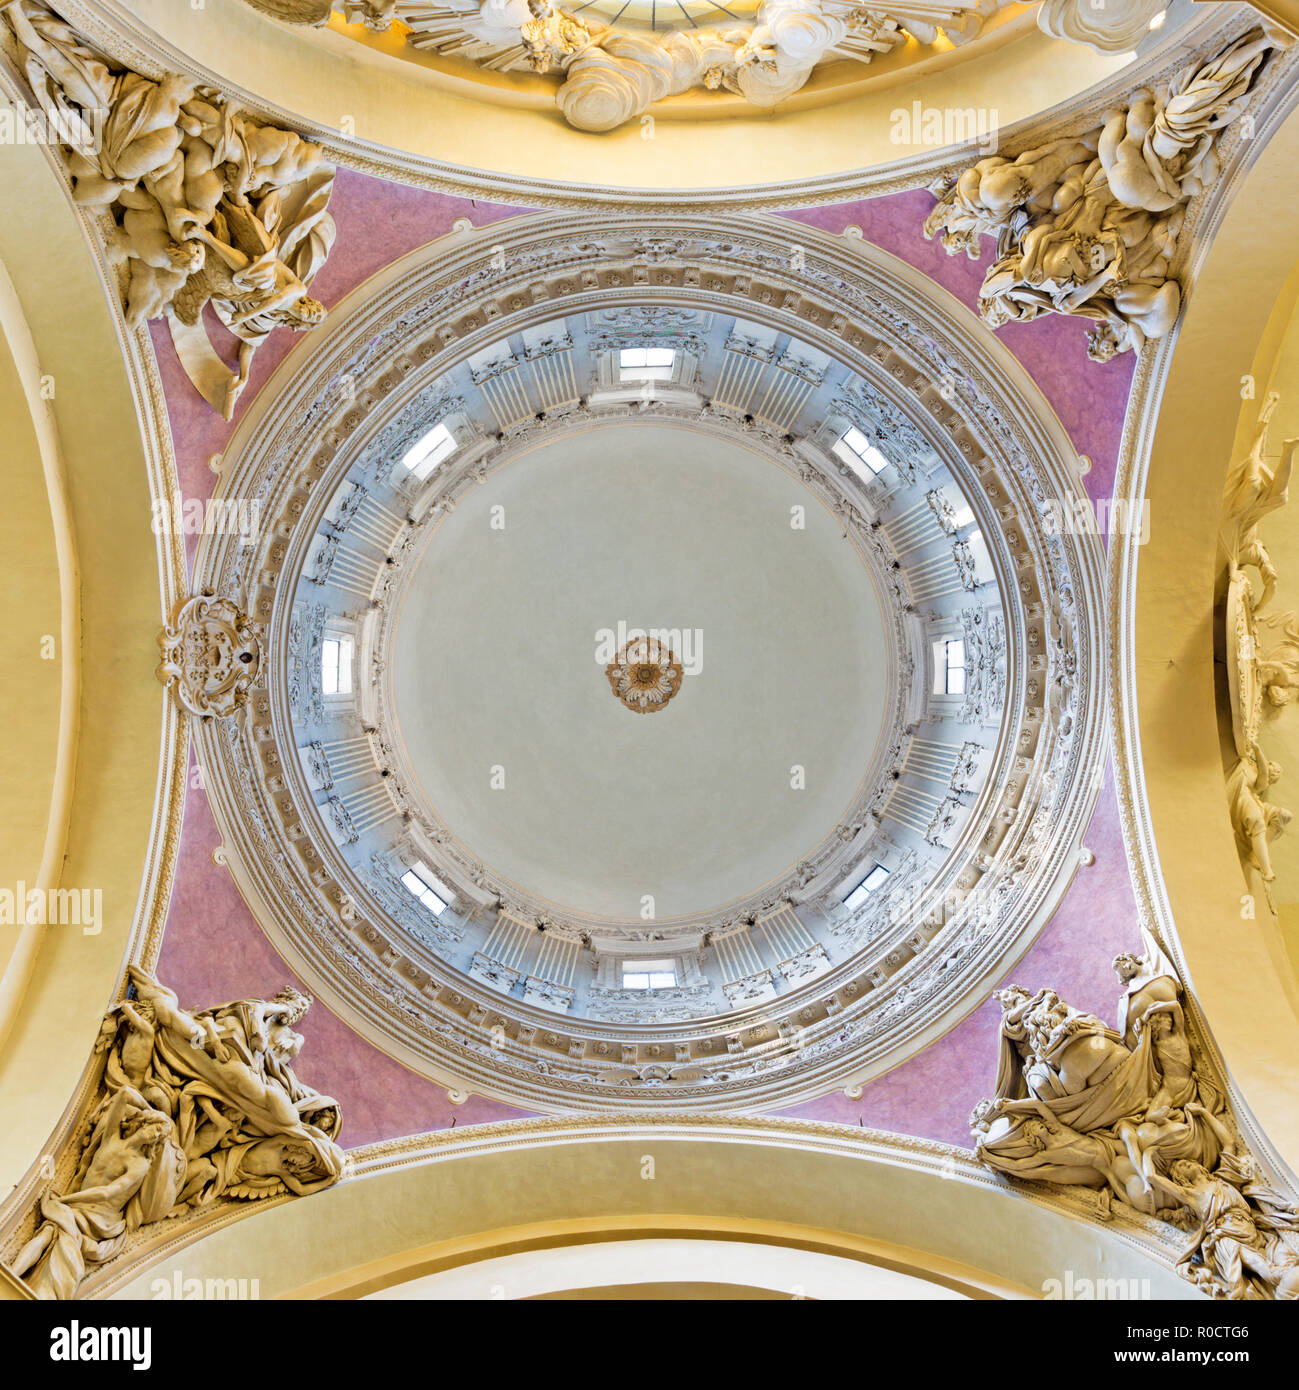 PARMA, Italia - 17 Aprile 2018: la cupola barocca della chiesa di Santa Teresa con i quattro Evangelisti di Domenico Reti da 17. cento. Foto Stock